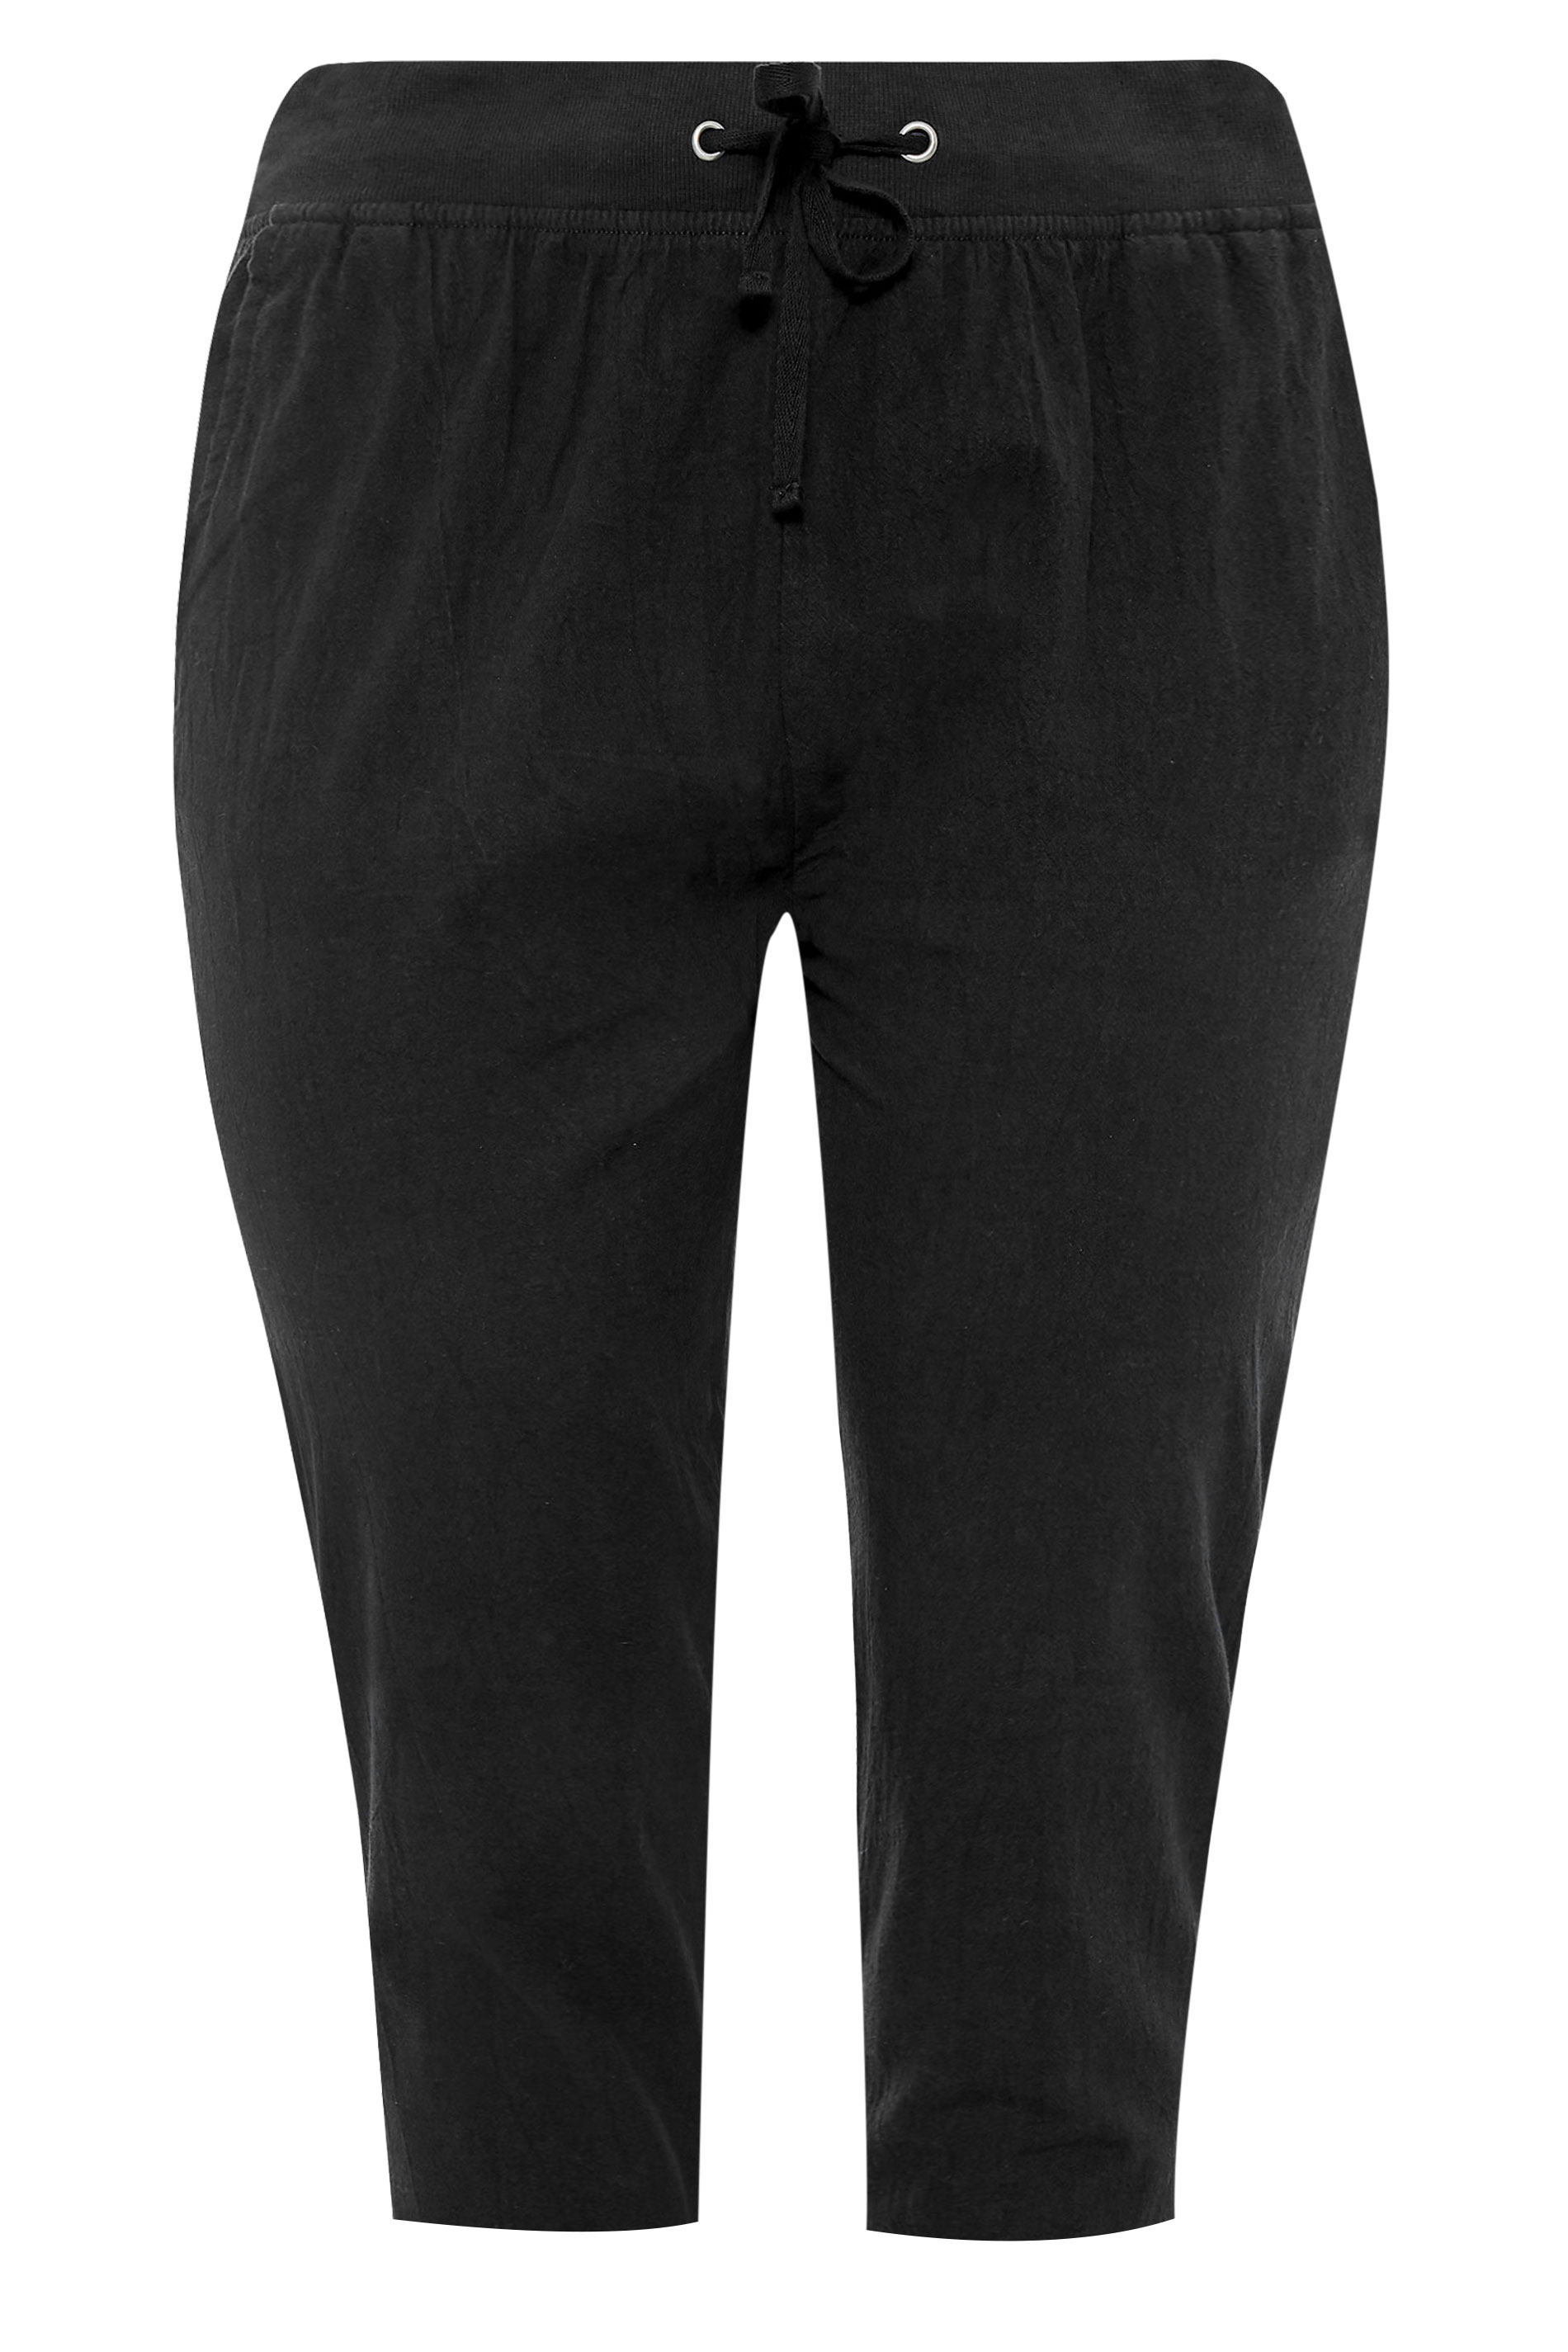 Grande taille  Pantalons Grande taille  Joggings | Jogging Noir Style Pantacourt en Coton - XH64729